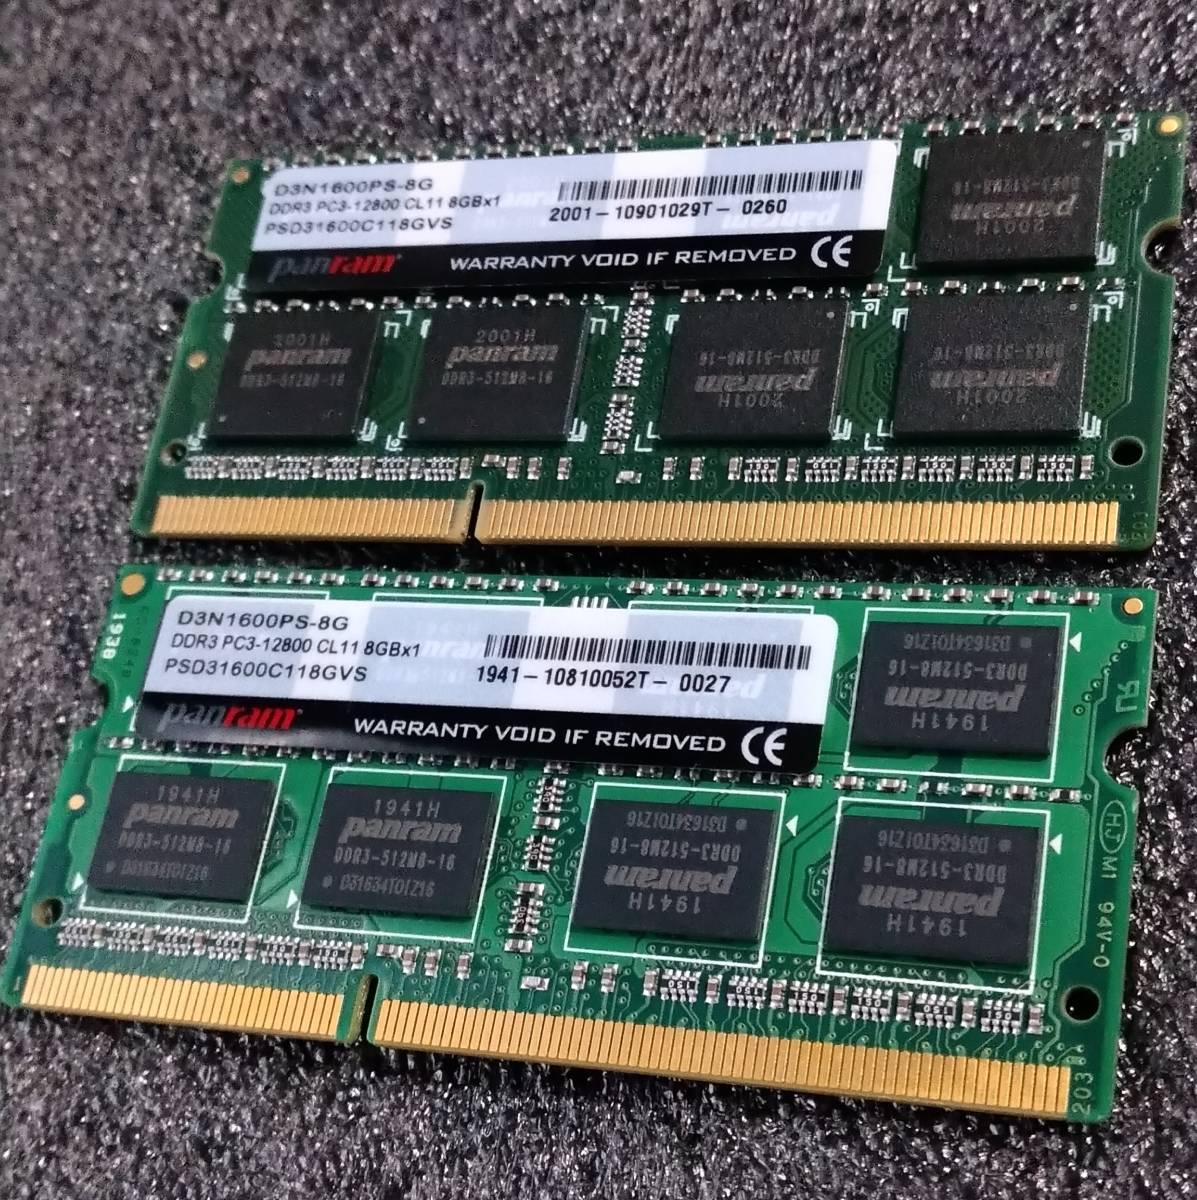 【中古】DDR3 SODIMM 16GB(8GB2枚組) Panram D3N1600PS-8G [DDR3-1600 PC3-12800]